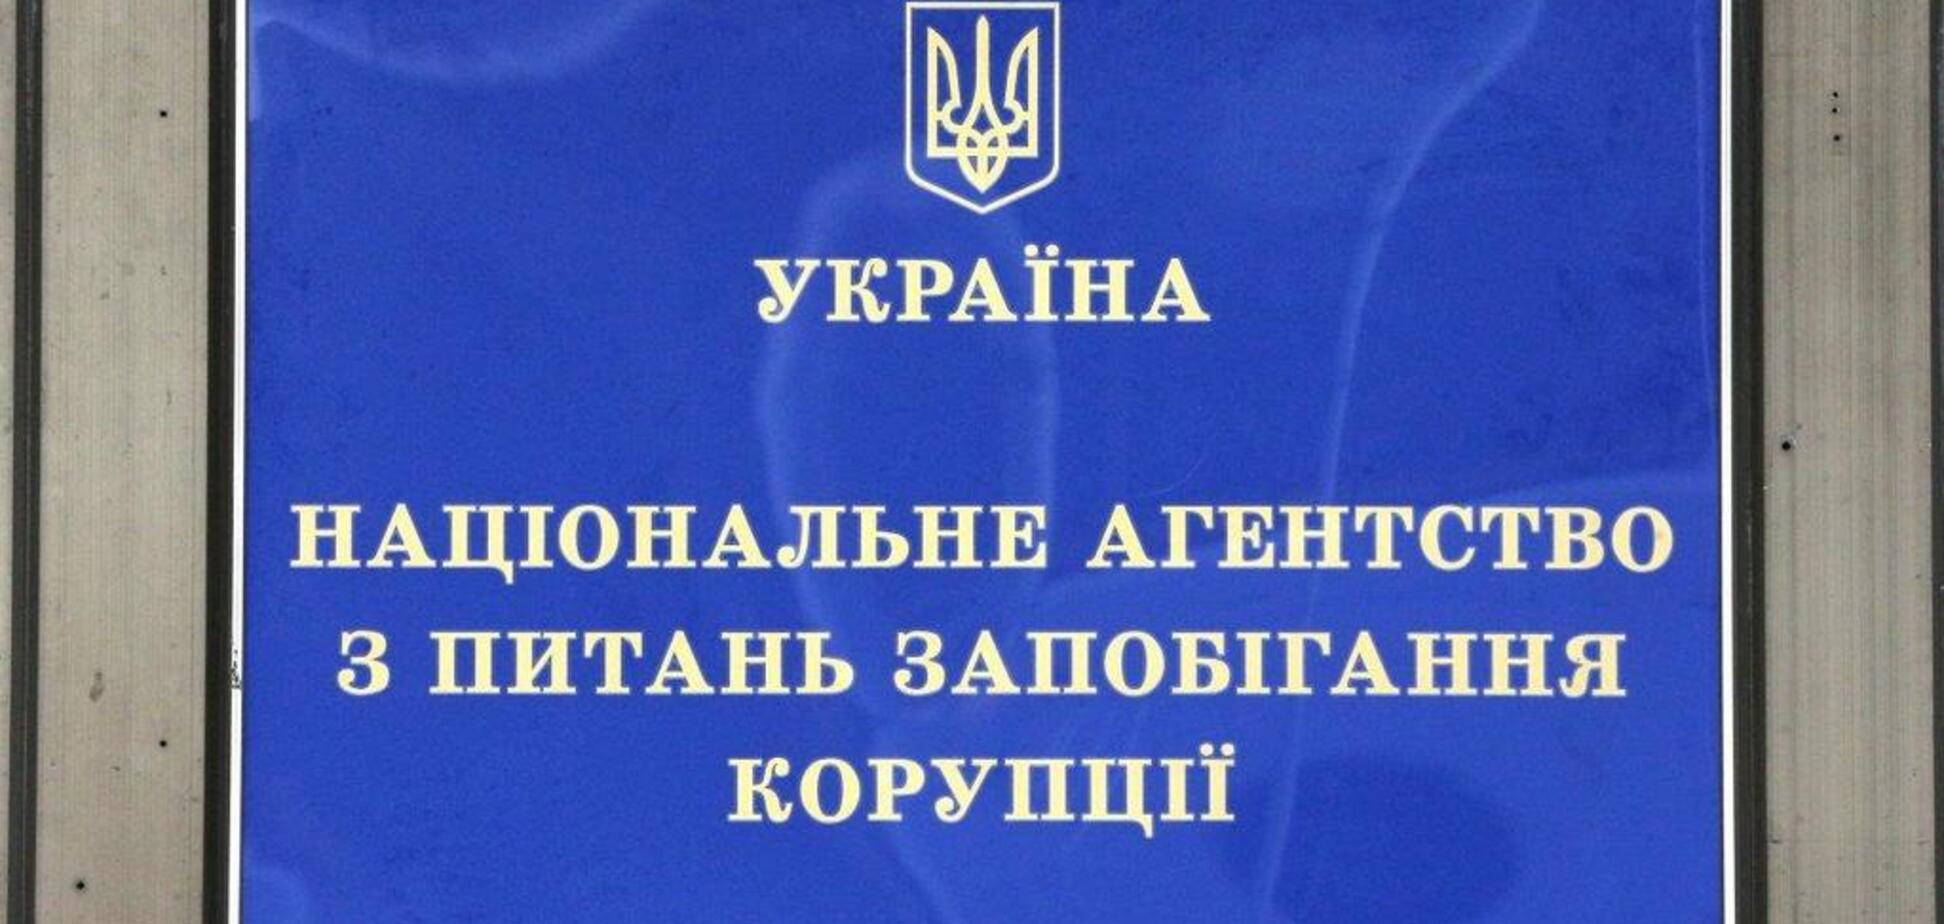 ''Политическое давление!'' Против антикоррупционного органа Украины выдвинули громкие обвинения